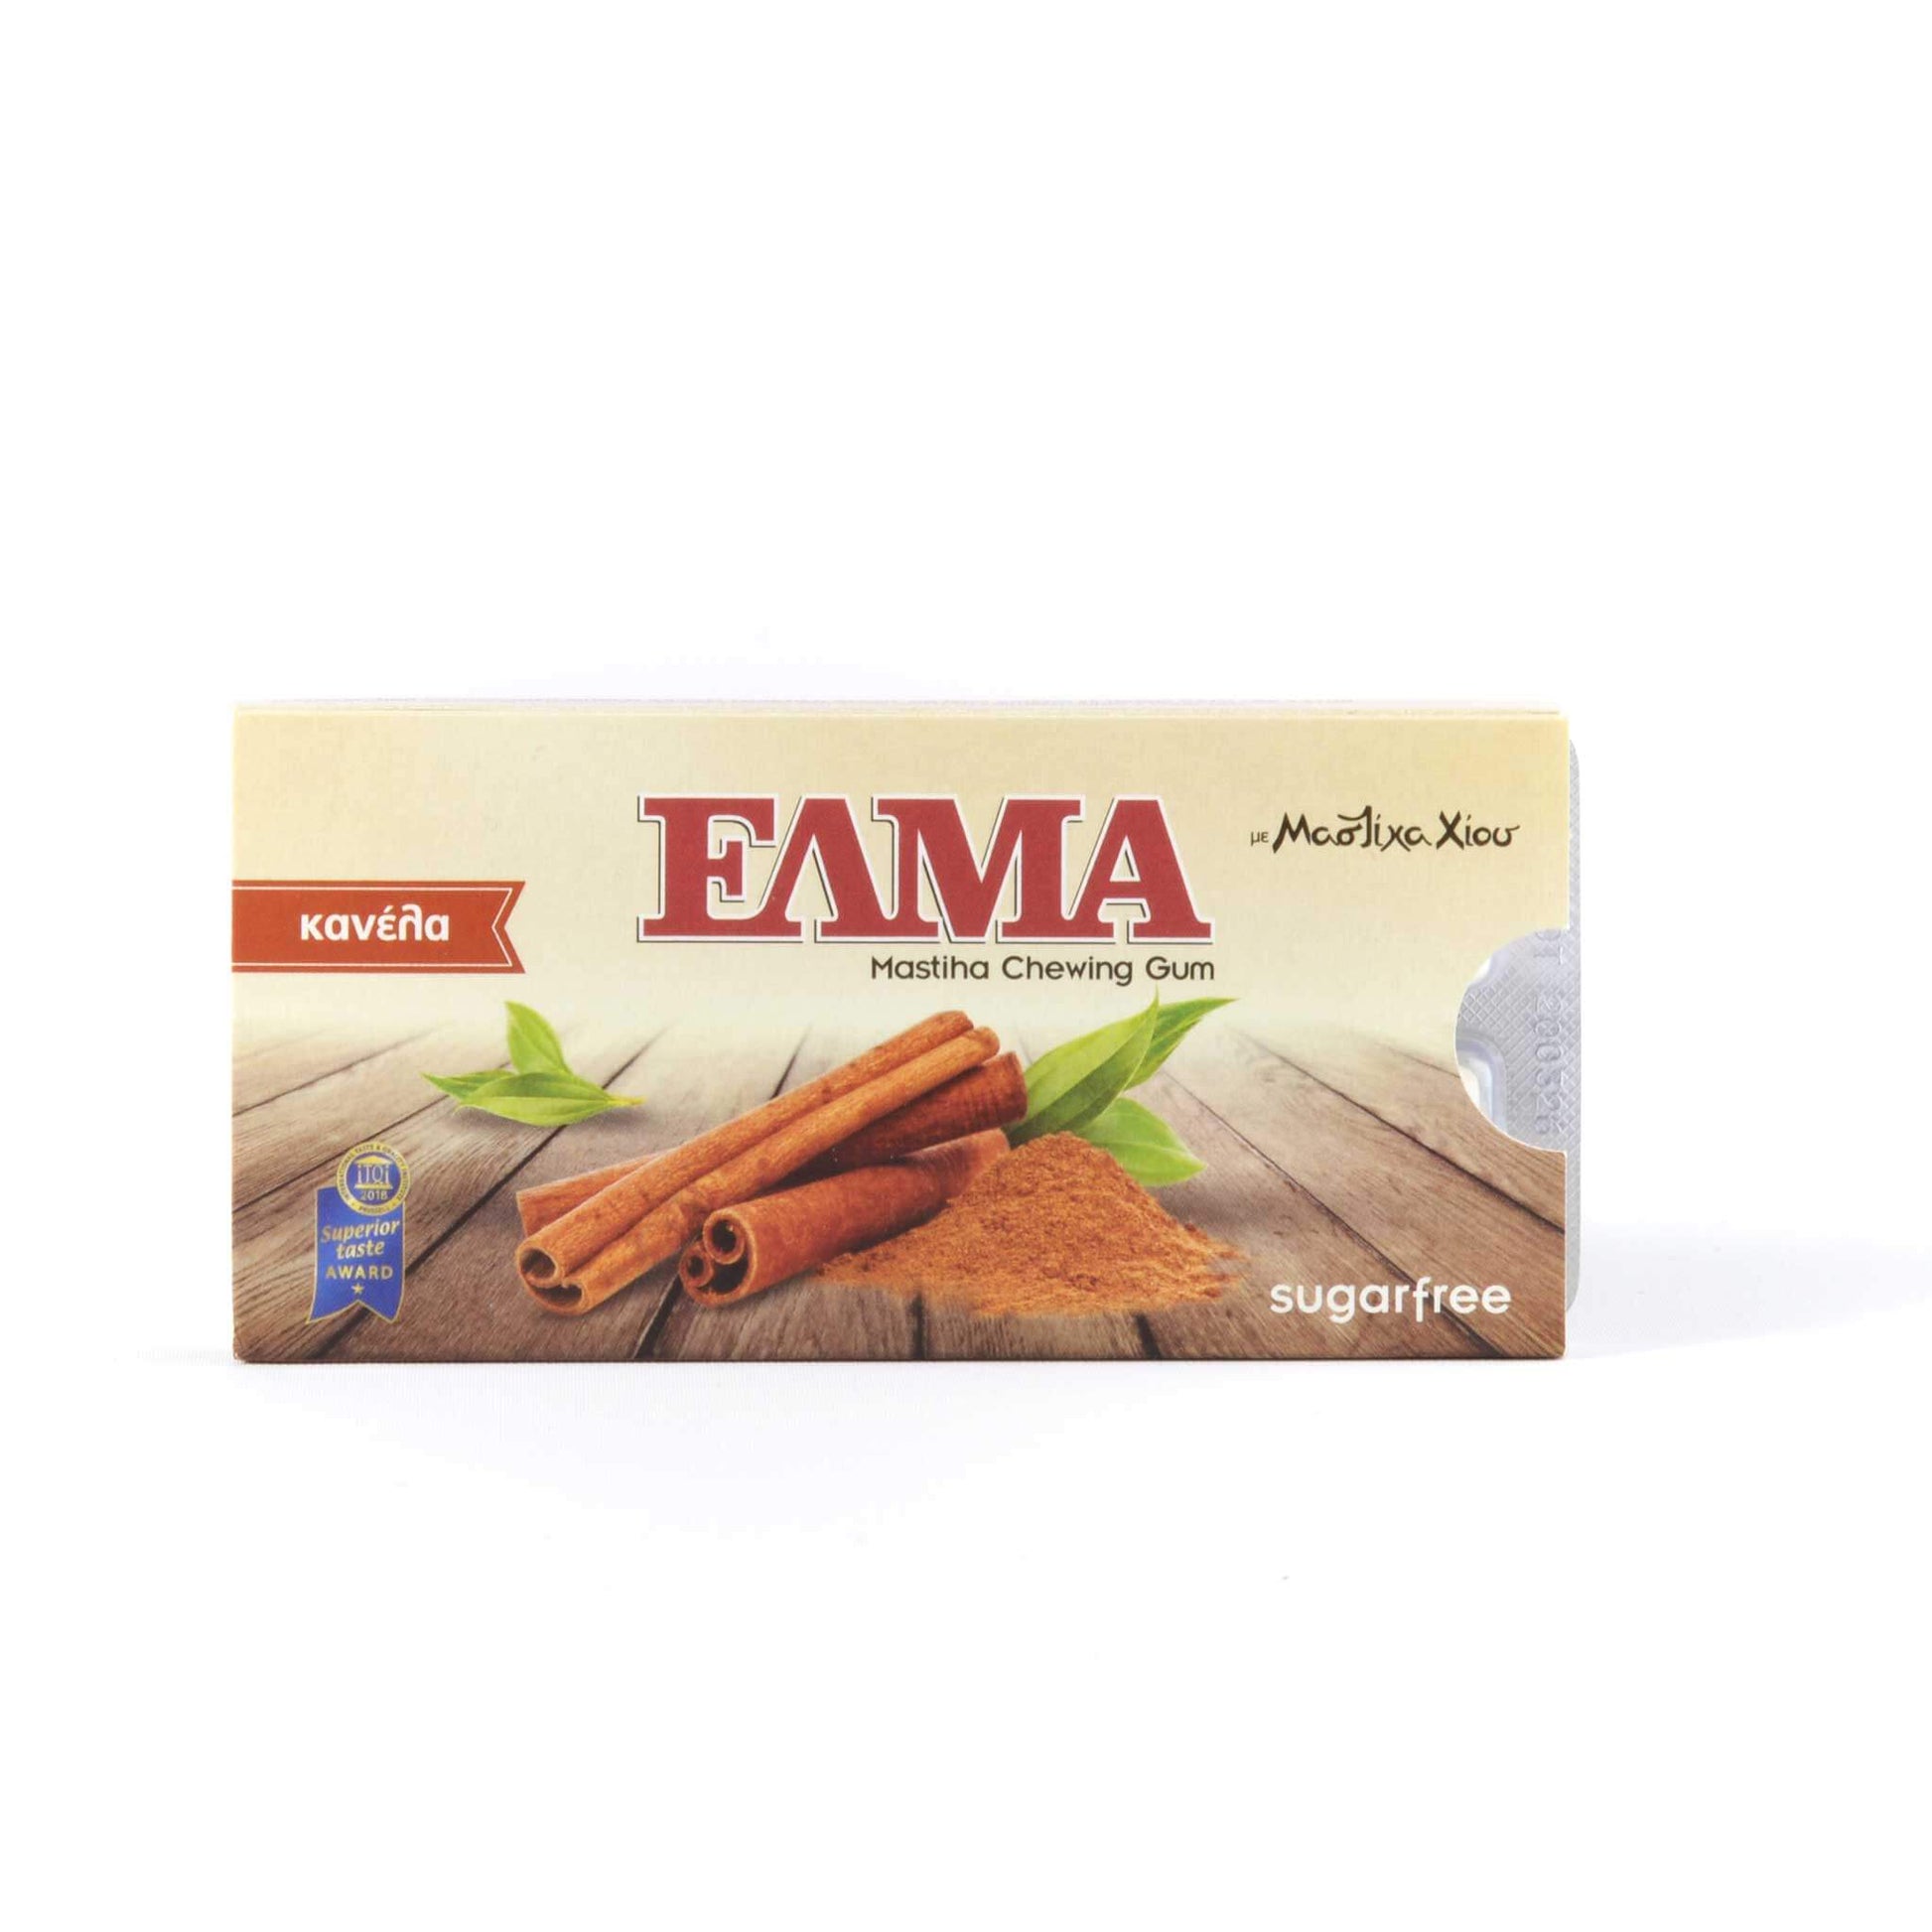 ELMA Cinnamon with mastic gum